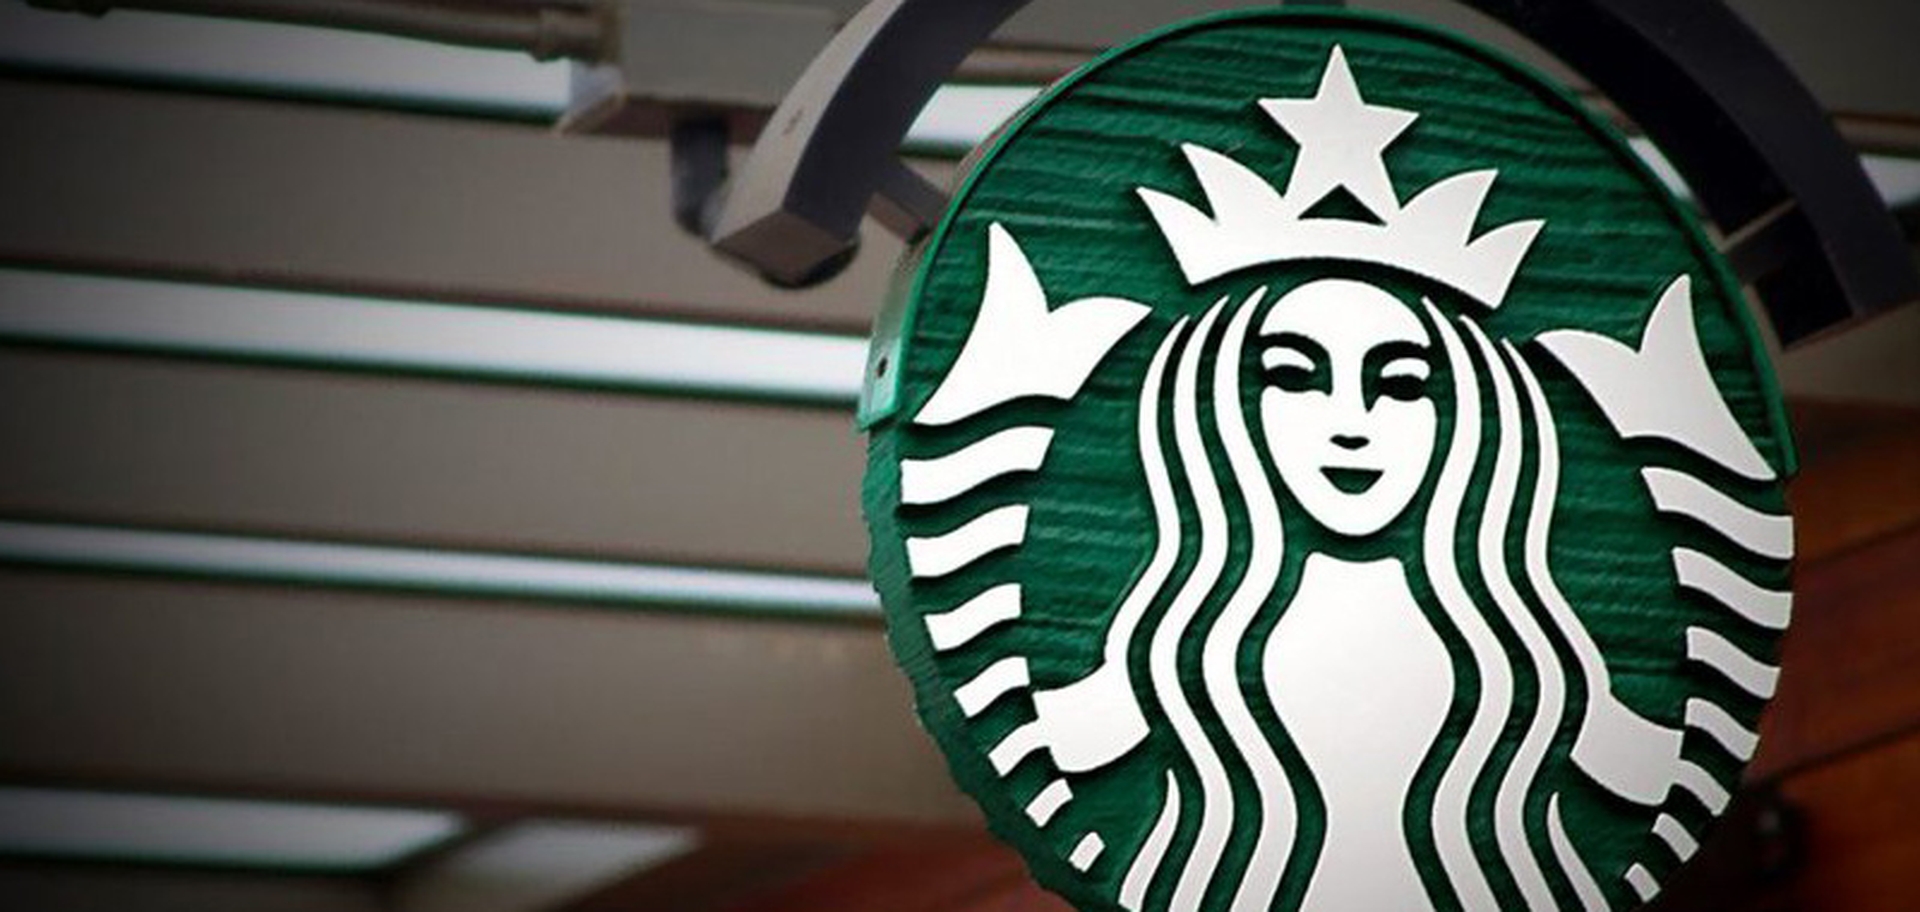 Das Loyalitätsprogramm von Starbucks Metaverse ist eine Plattform, die durch die Nutzung von Web3-Technologien erstellt wurde, um ein unternehmensnahes Modell der gemeinsamen Loyalität und des wirtschaftlichen Eigentums mit den Kunden zu schaffen.